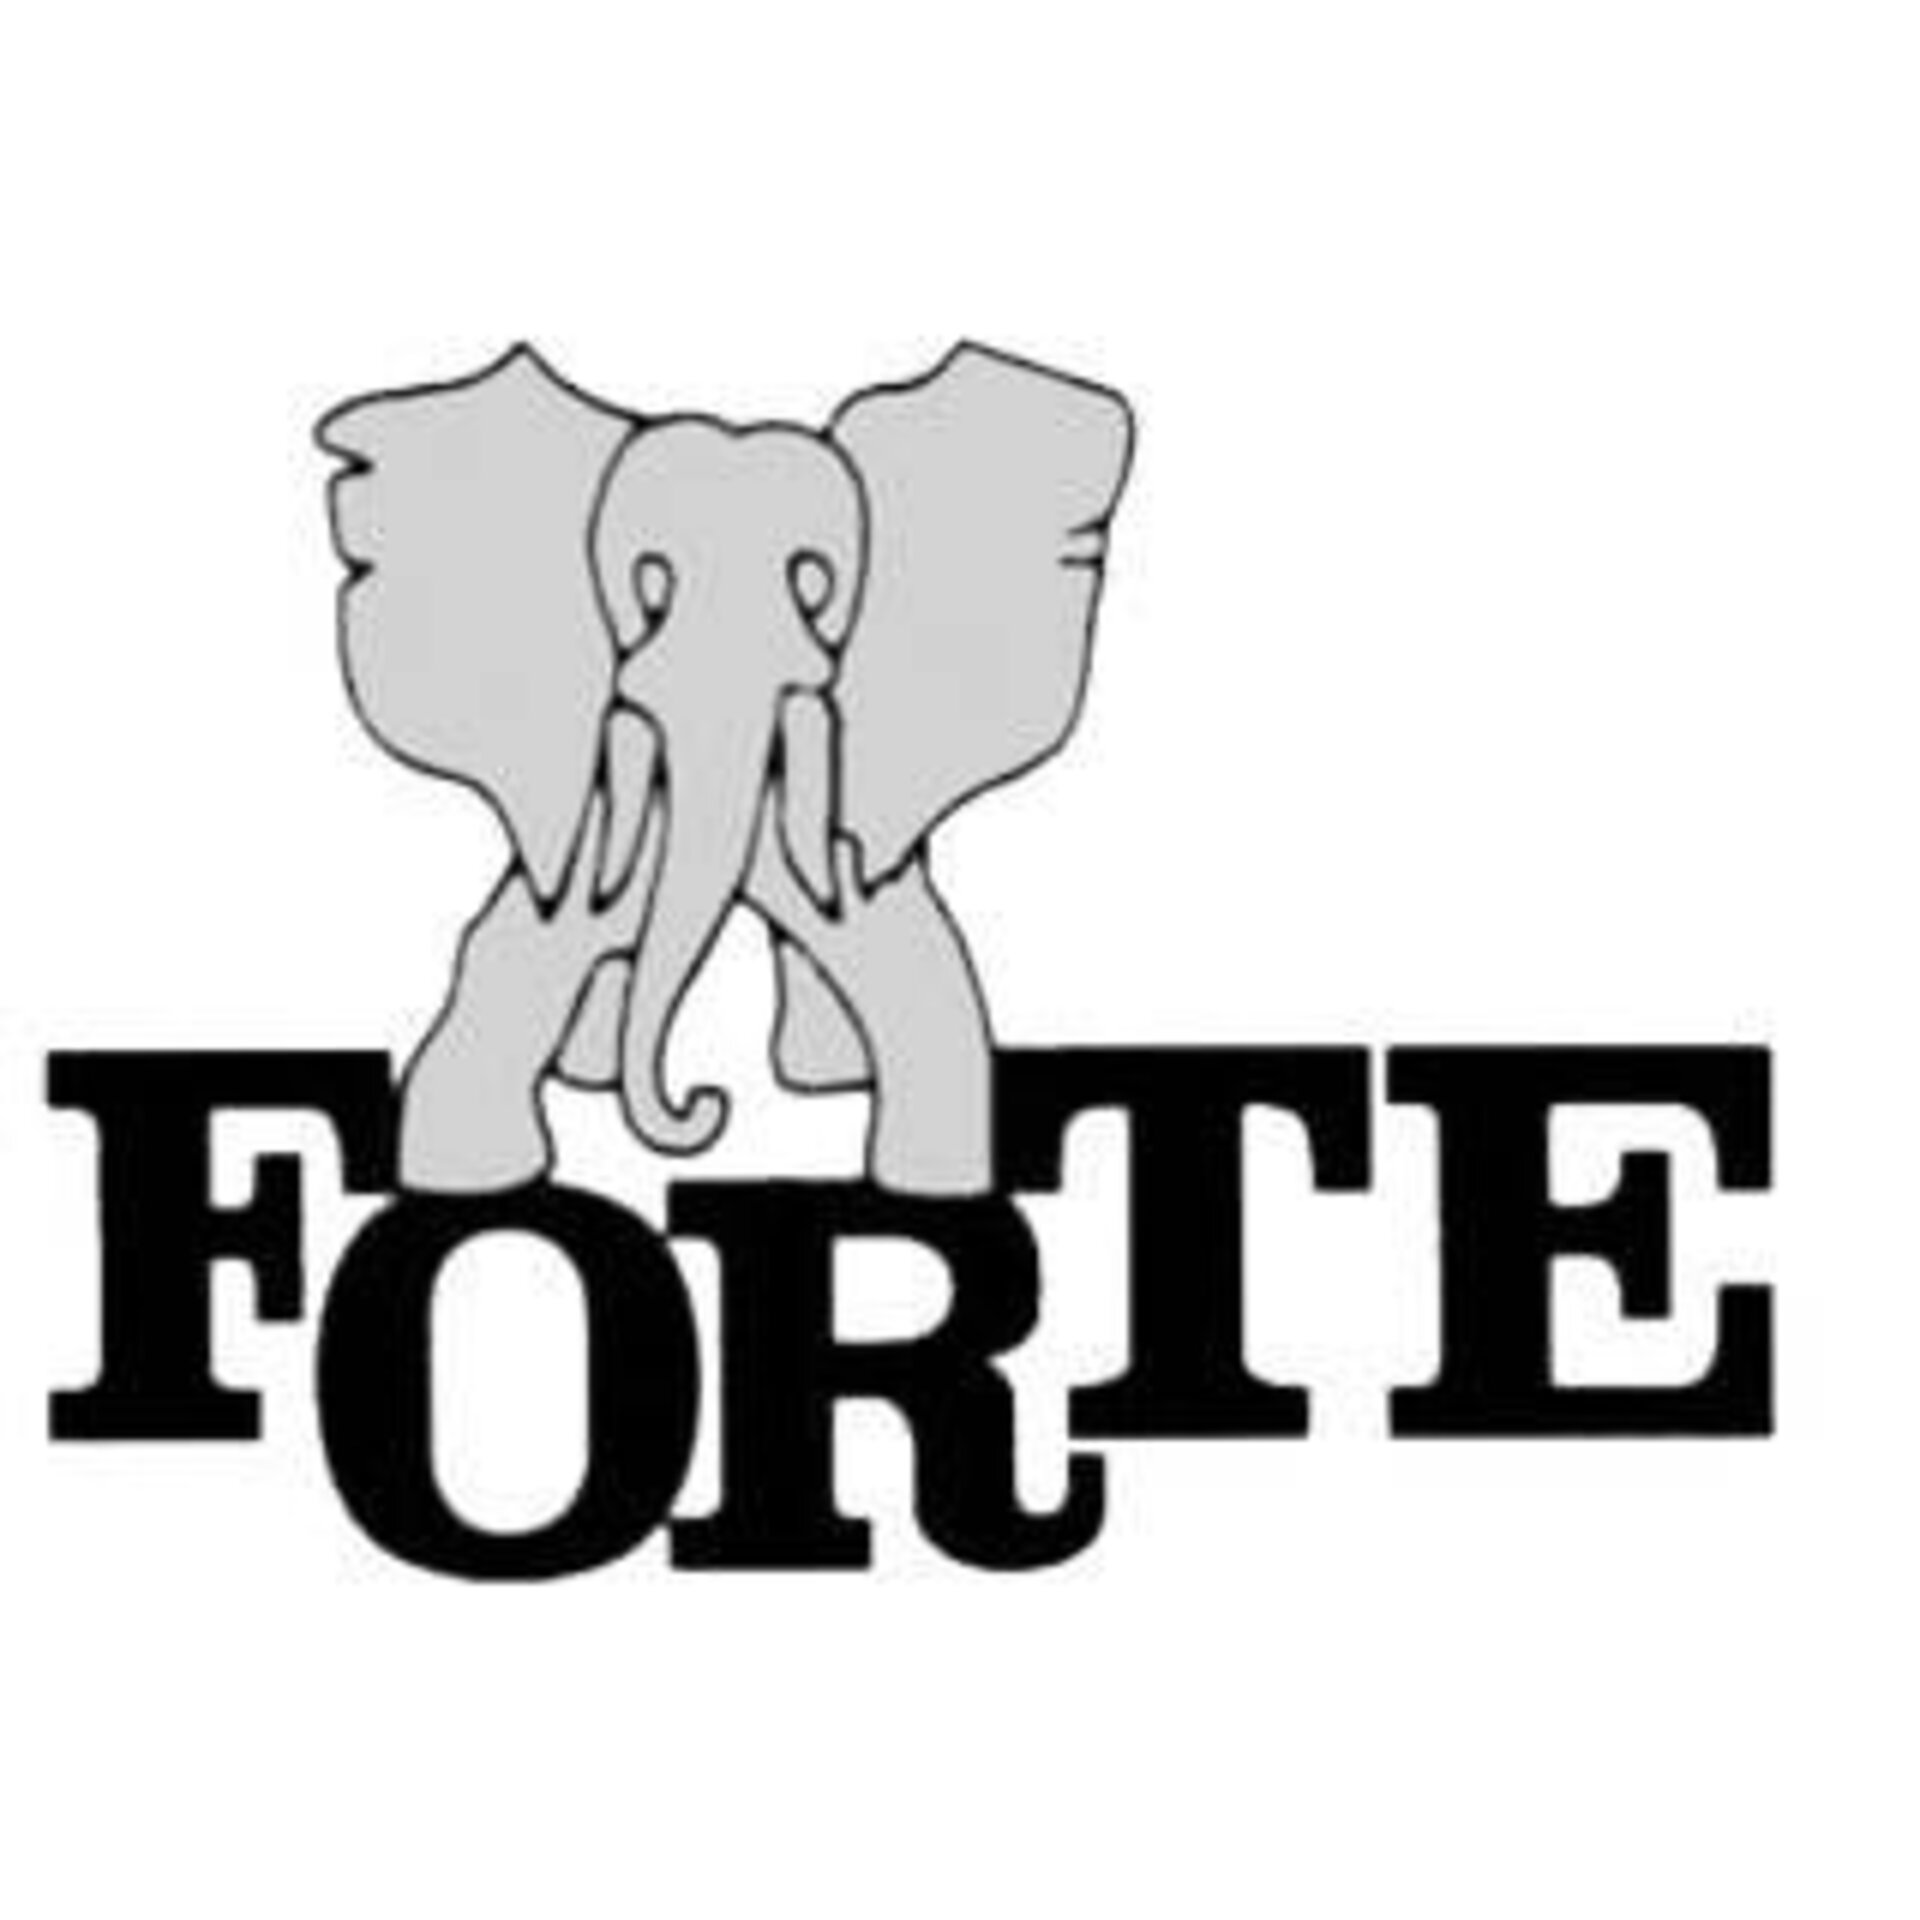 Logo FORTE